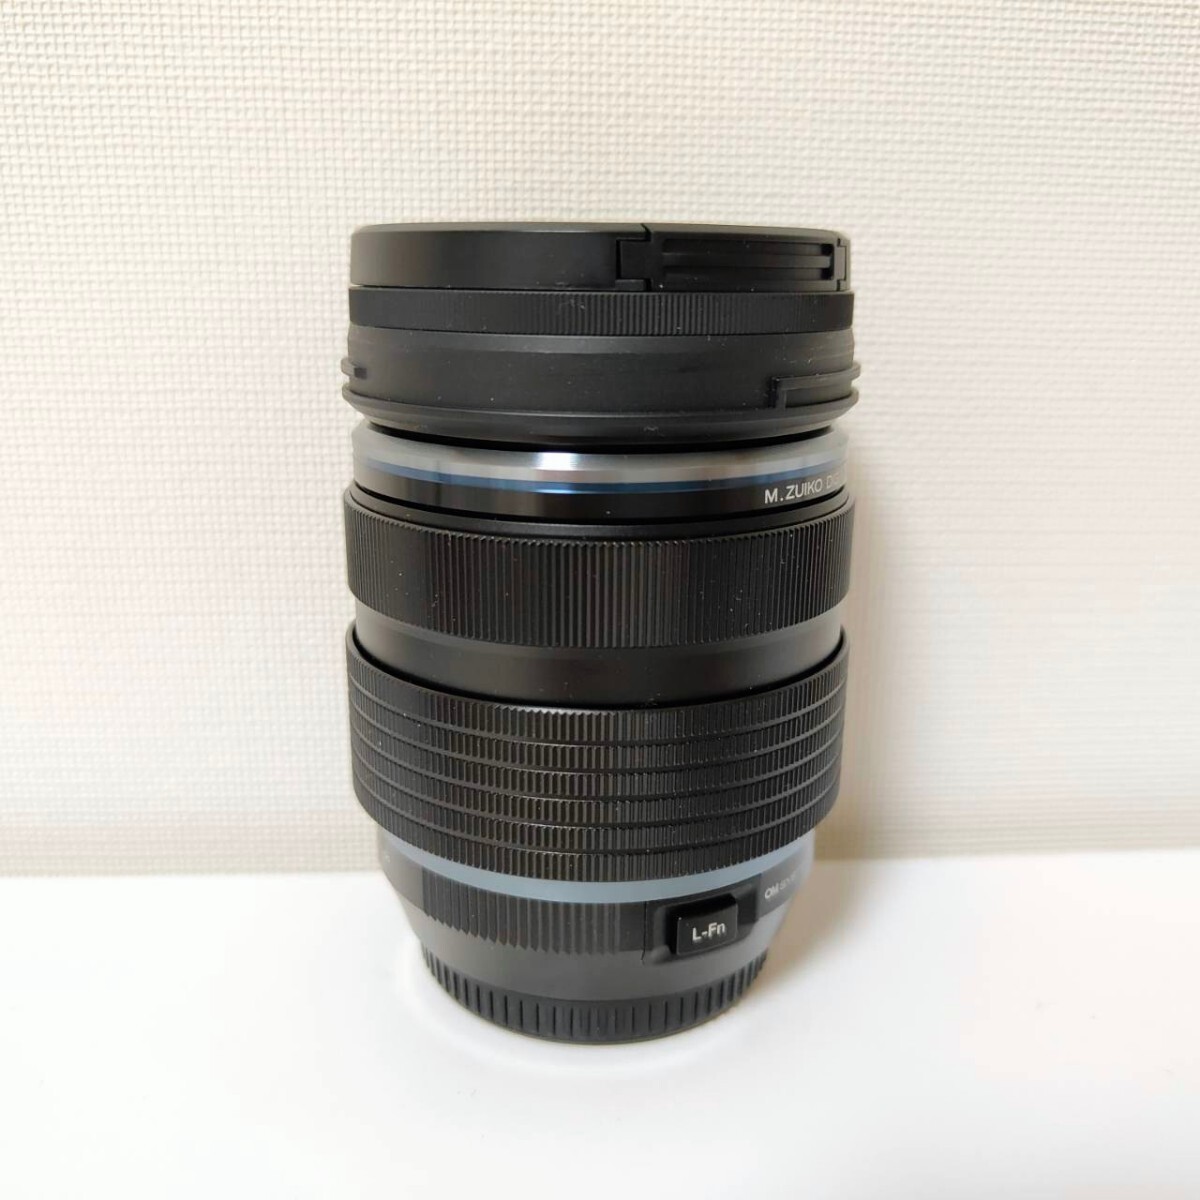 OLYMPUS OM SYSTEM M.ZUIKO DIGITAL 12-40mm 1:2.8 Ⅱ PRO camera lens 